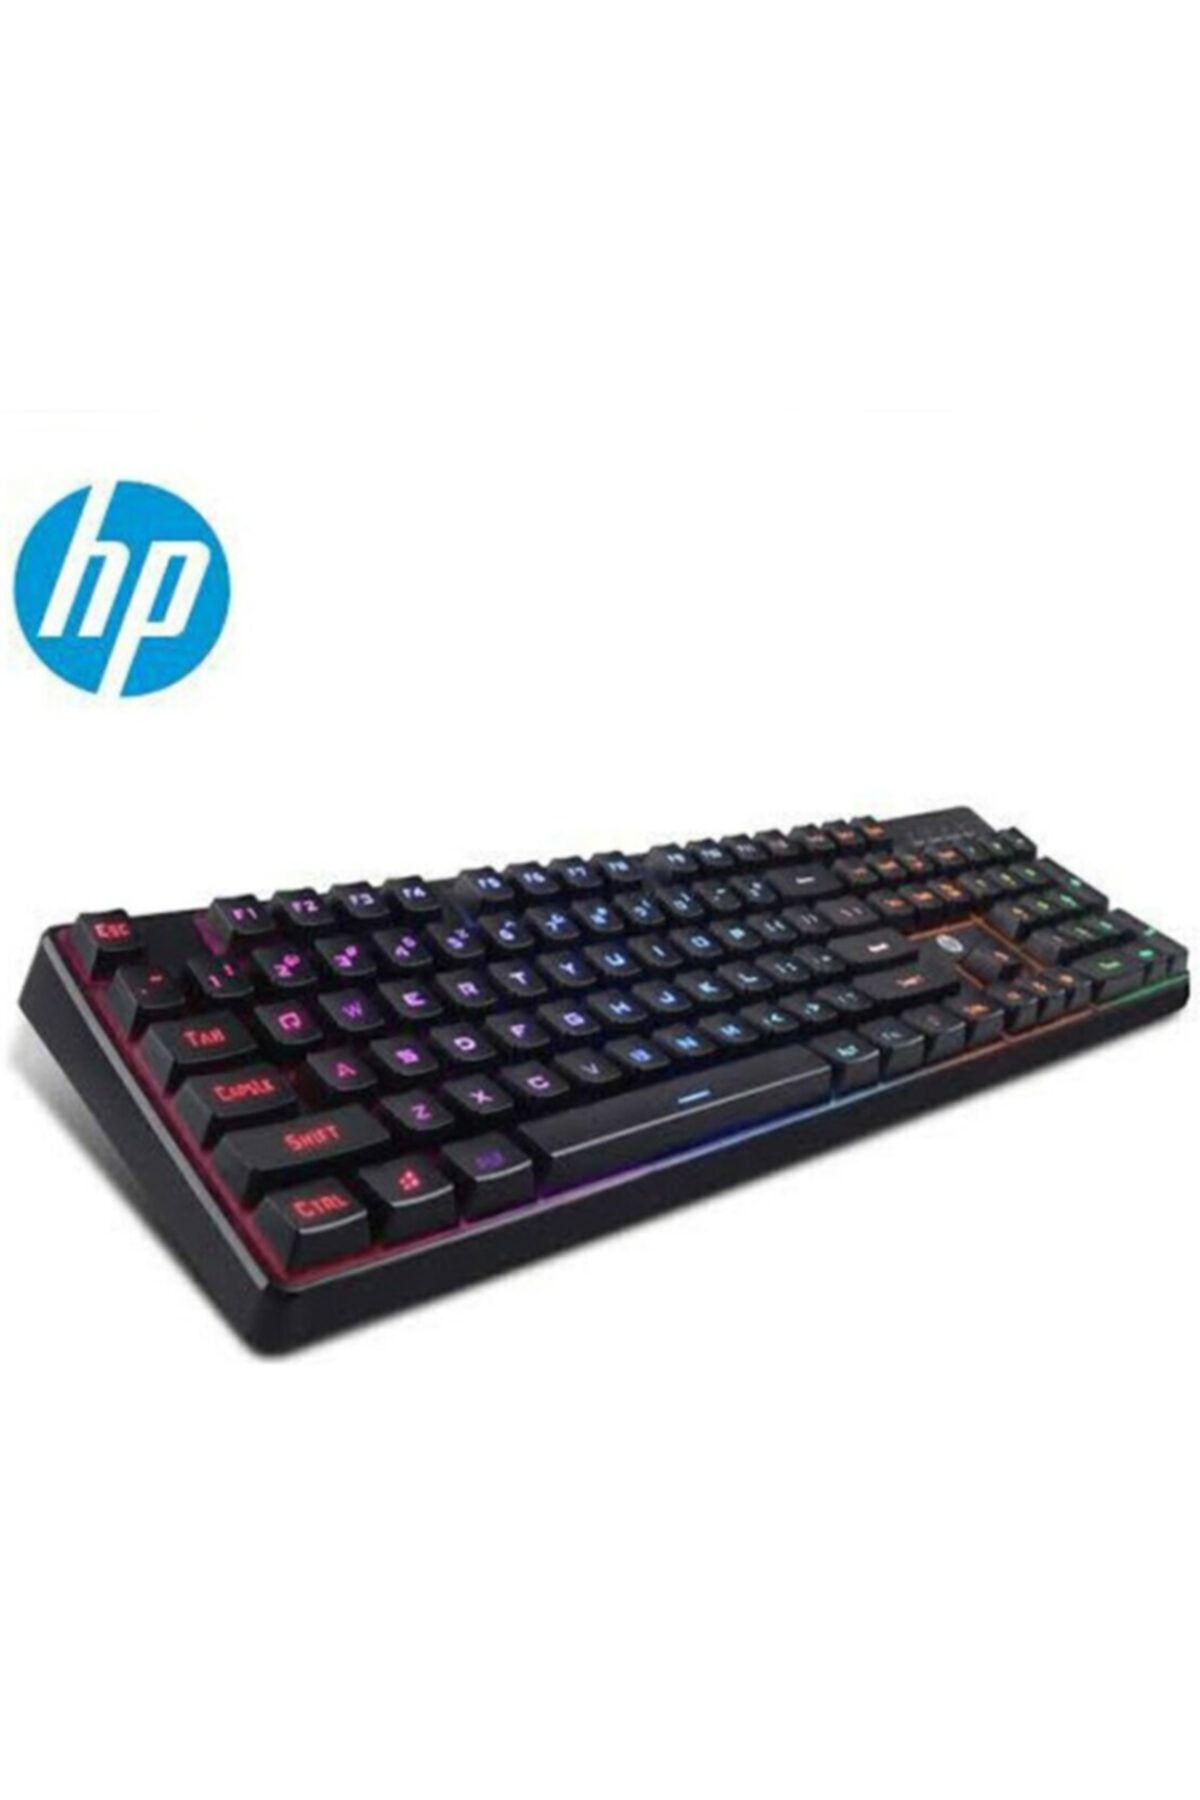 HP K300 Gaming Keyboard 300k